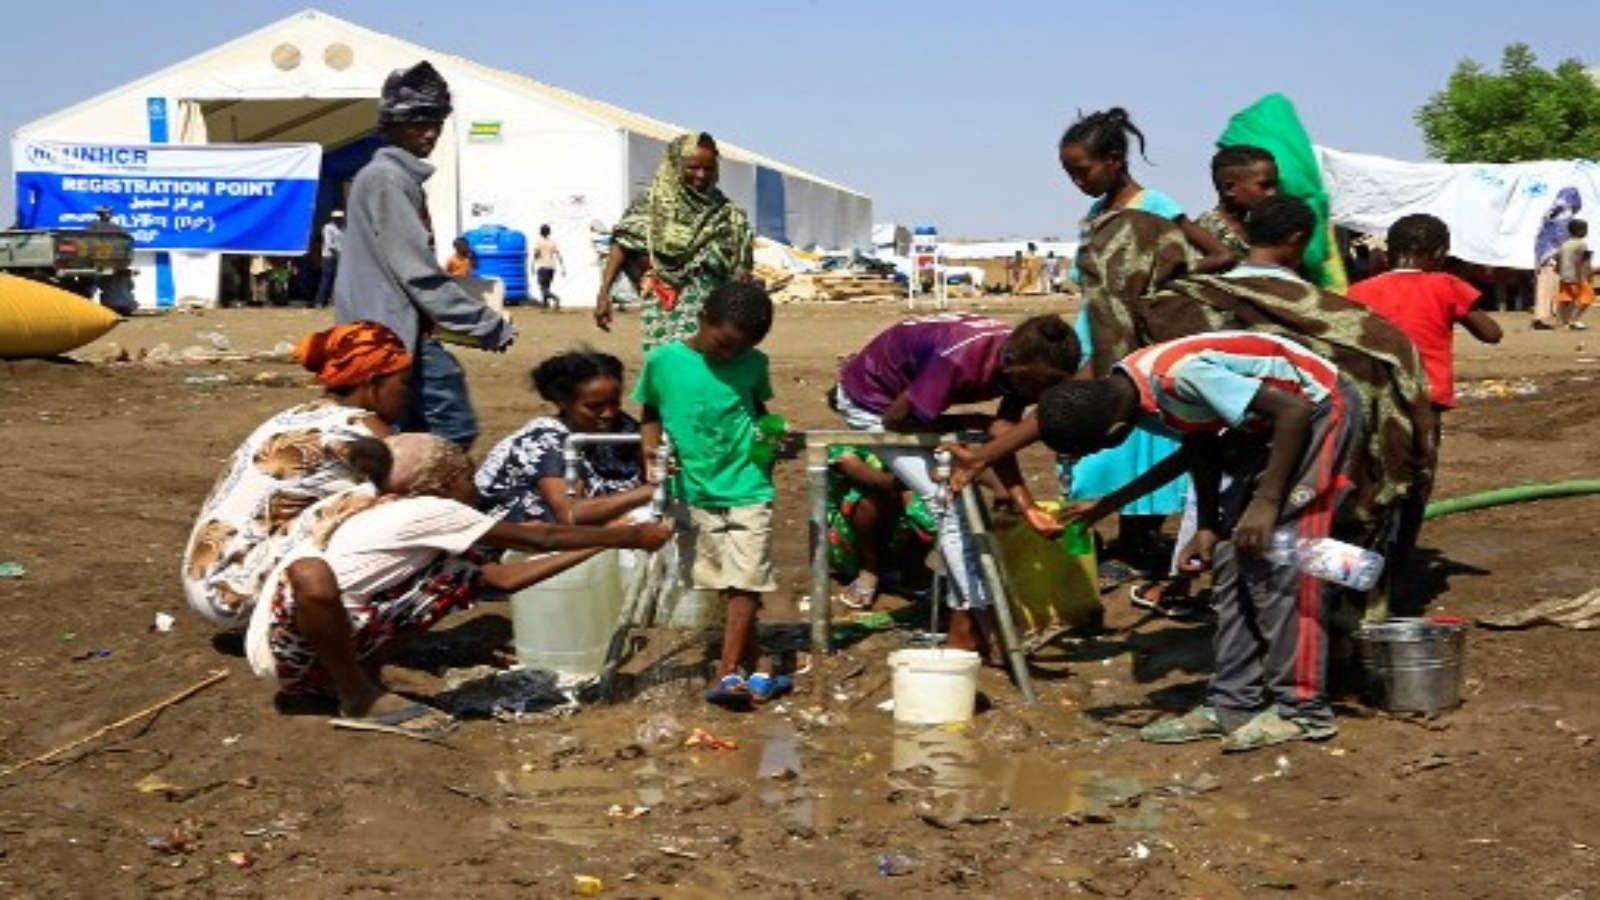 لاجئون اثيوبيون فروا من صراع تيغراي يملأون الزجاجات والحاويات بالمياه بعد وصولهم إلى مركز عبور في بلدة هامداييت الحدودية السودانية في 27 نوفمبر 2020